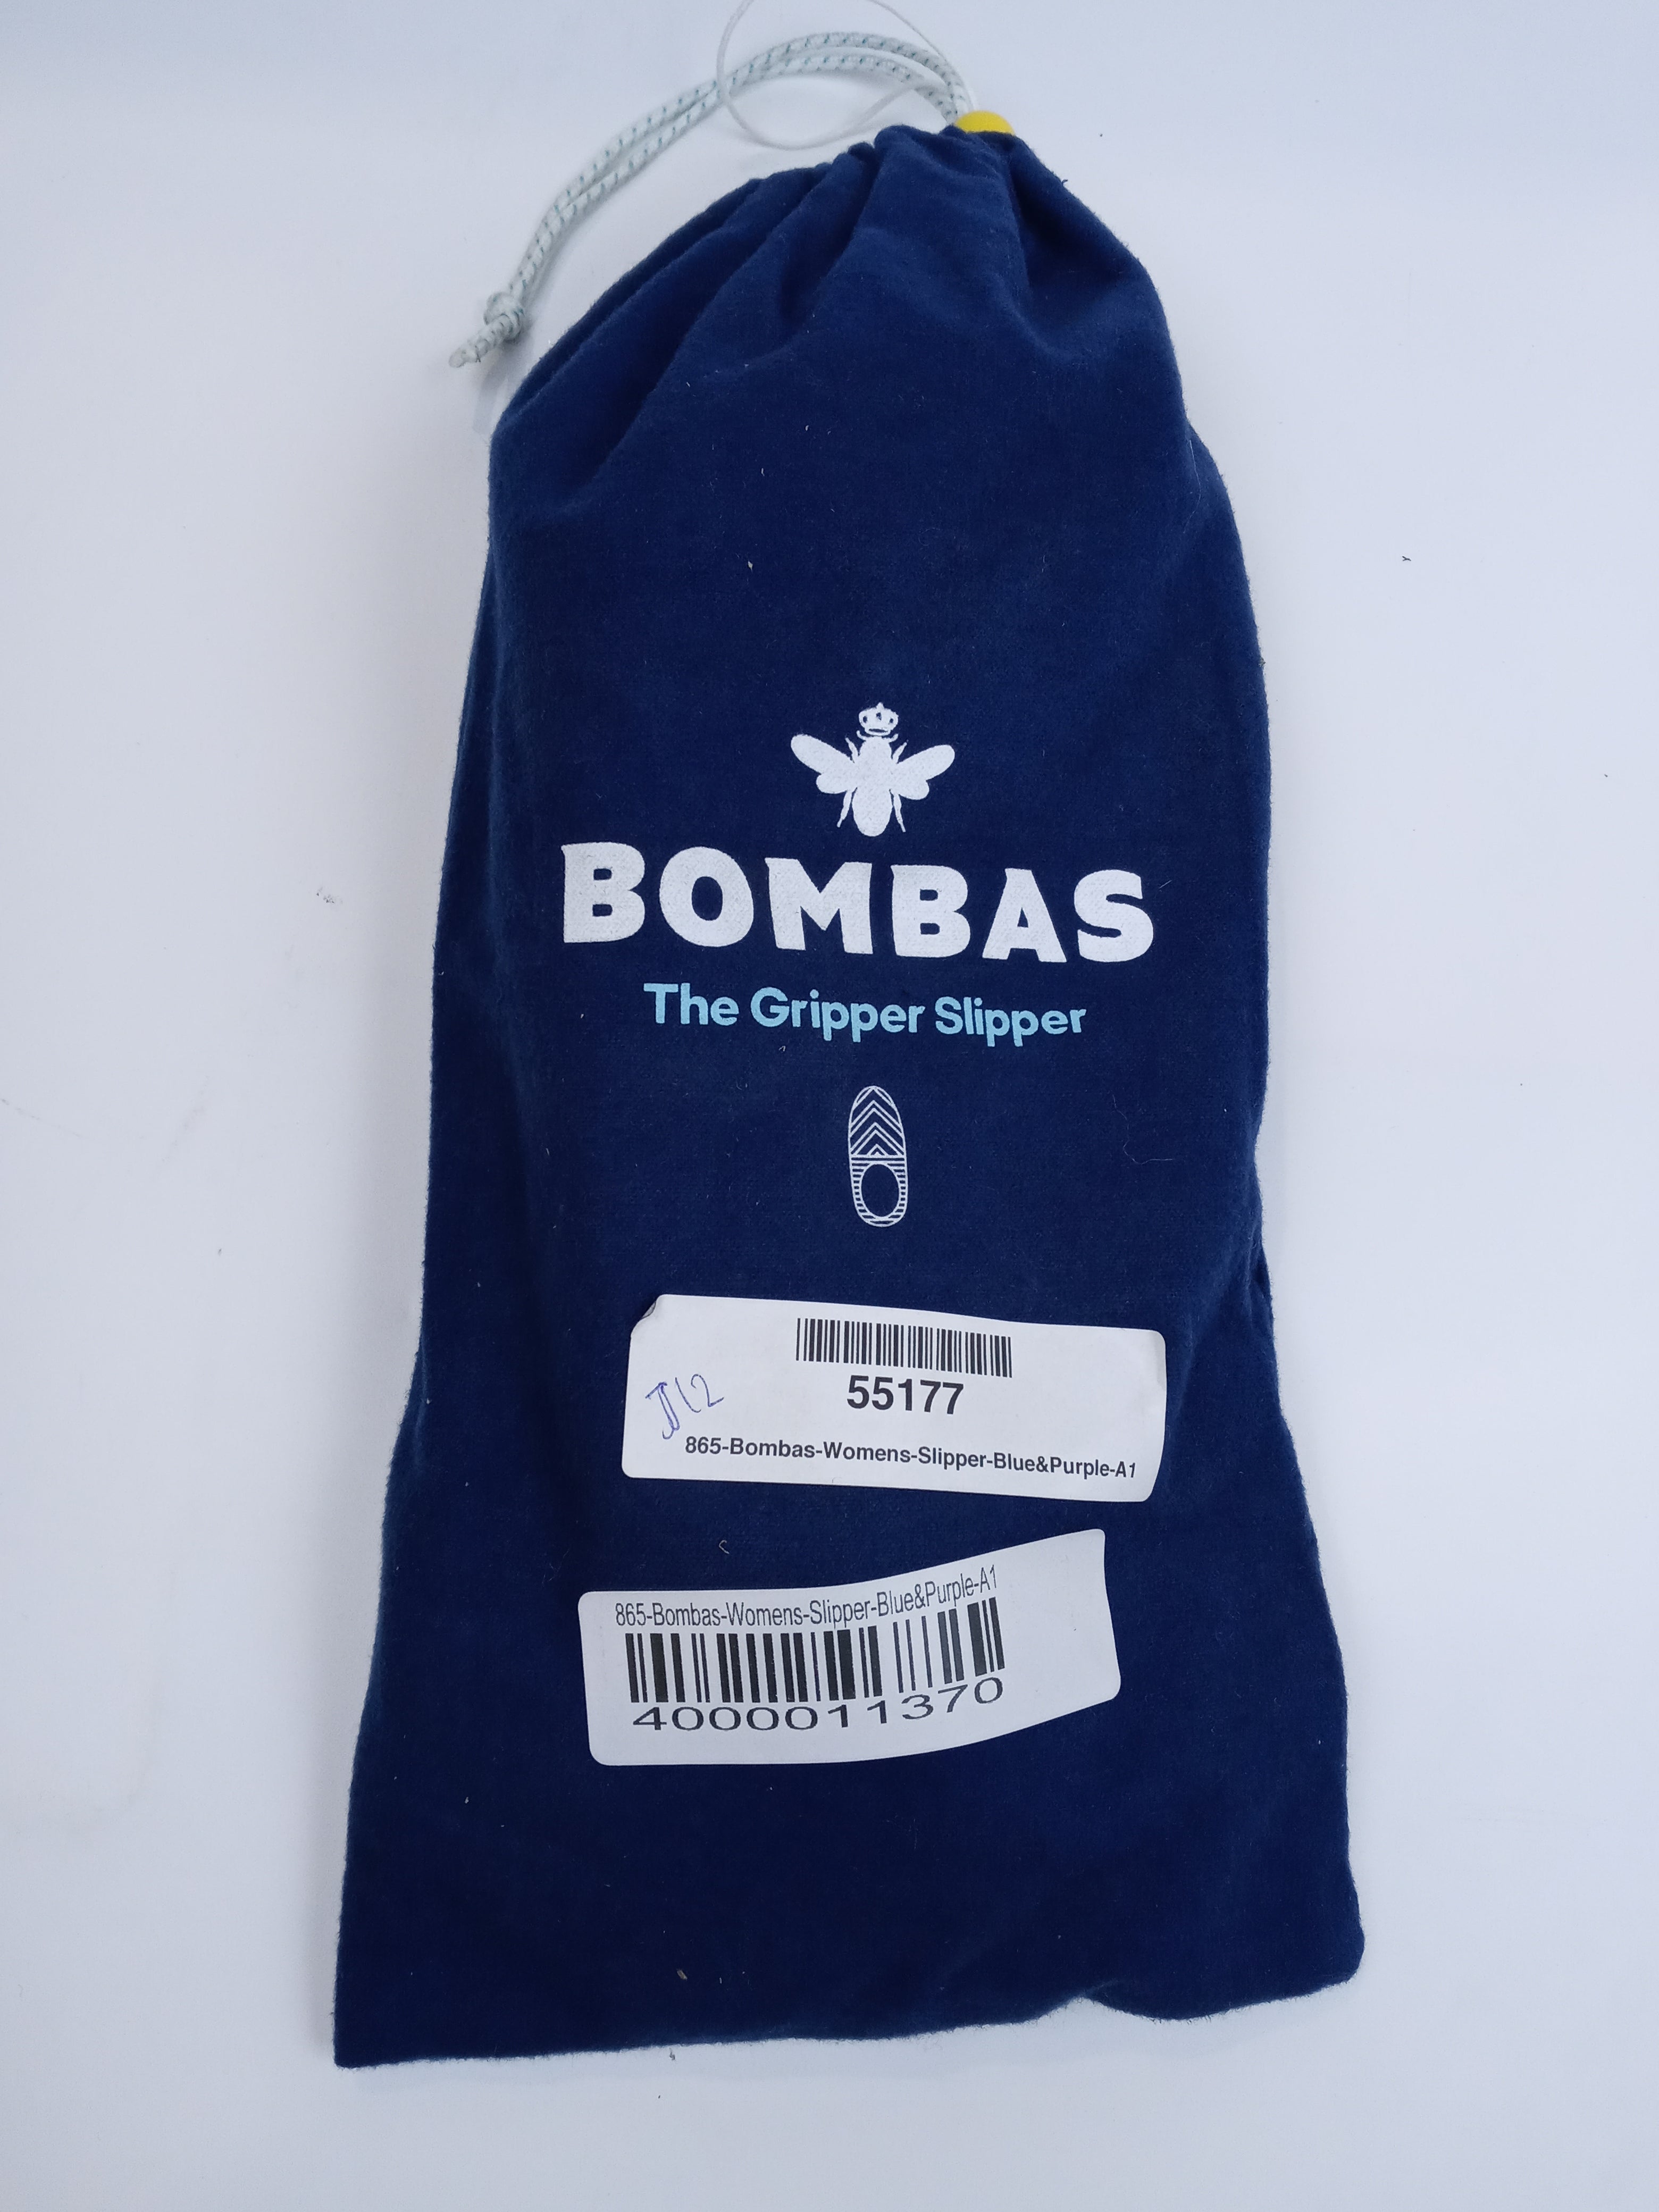 Bombas womens gripper slipper socks